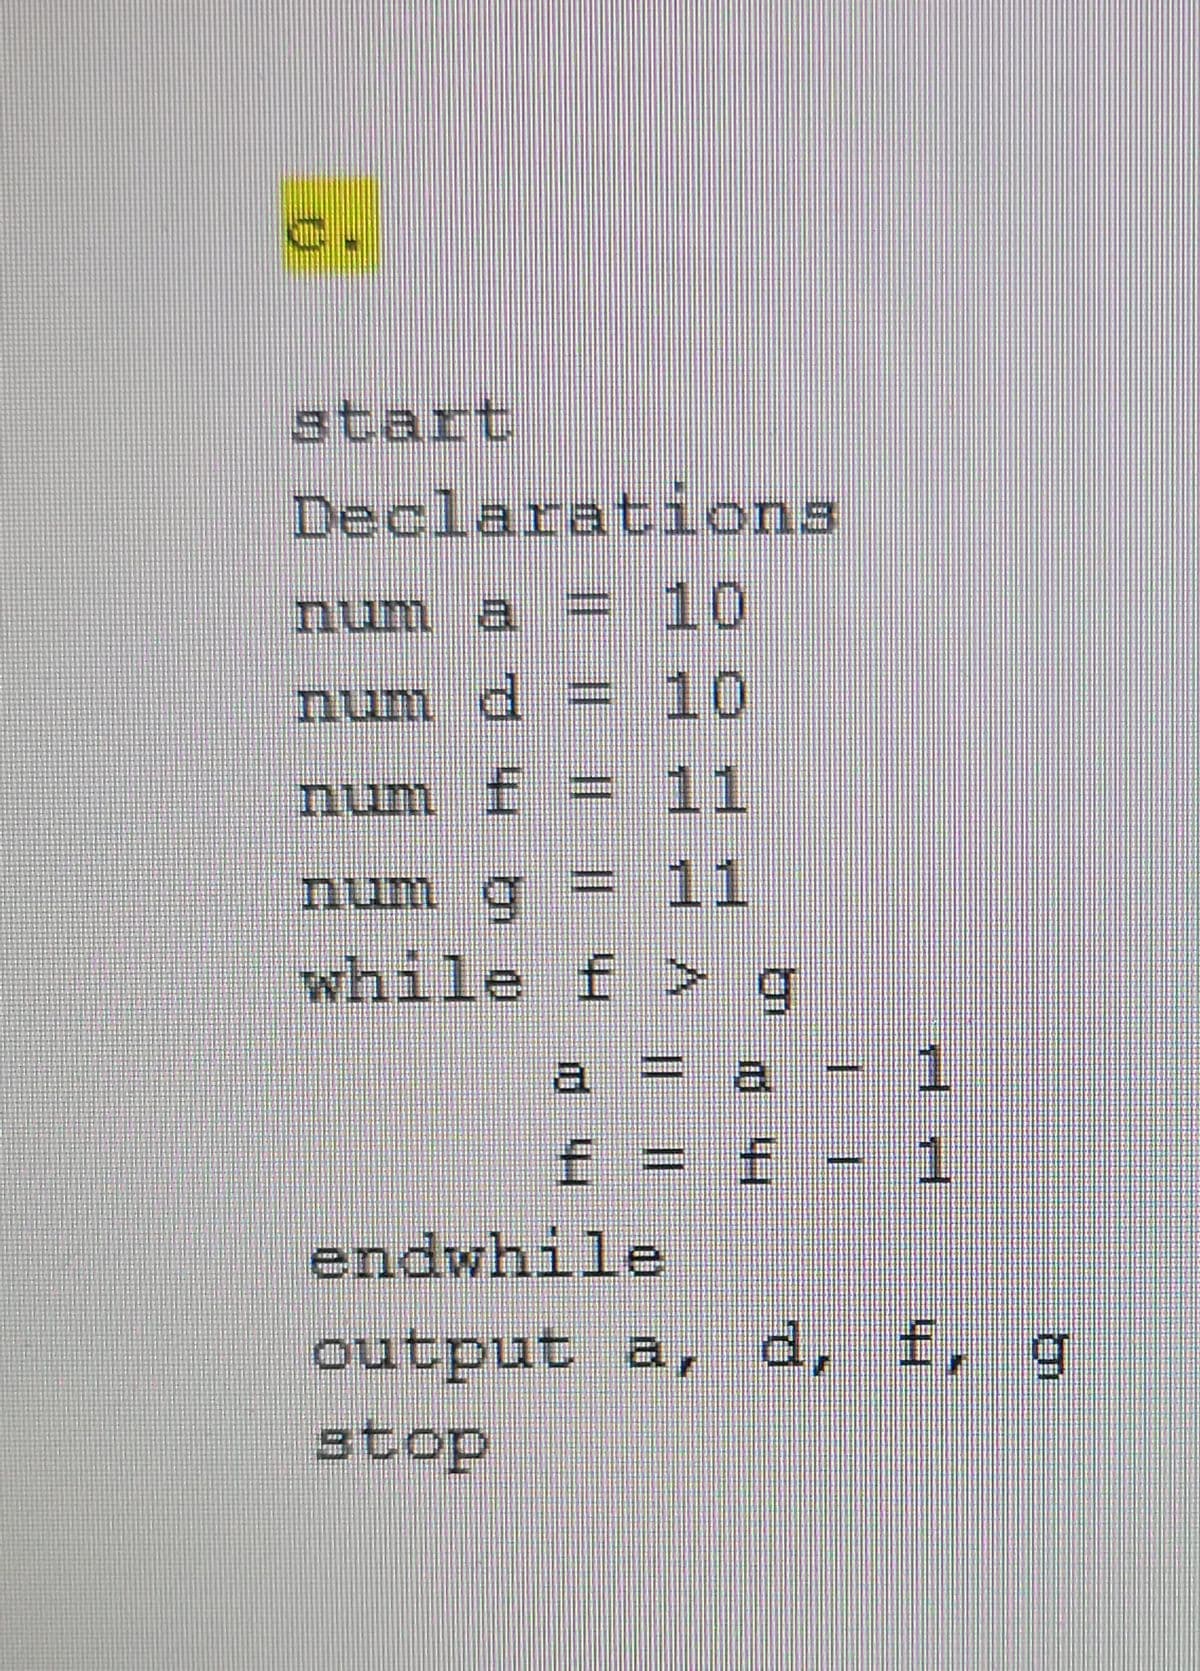 start
Declarations
num a = 10
num d
= 10
num f = 11
num g =
%3D
11
while f > q
a = a
f= f
1.
endwhile
output a, d, f, g
stop
Hh |||| ||||
